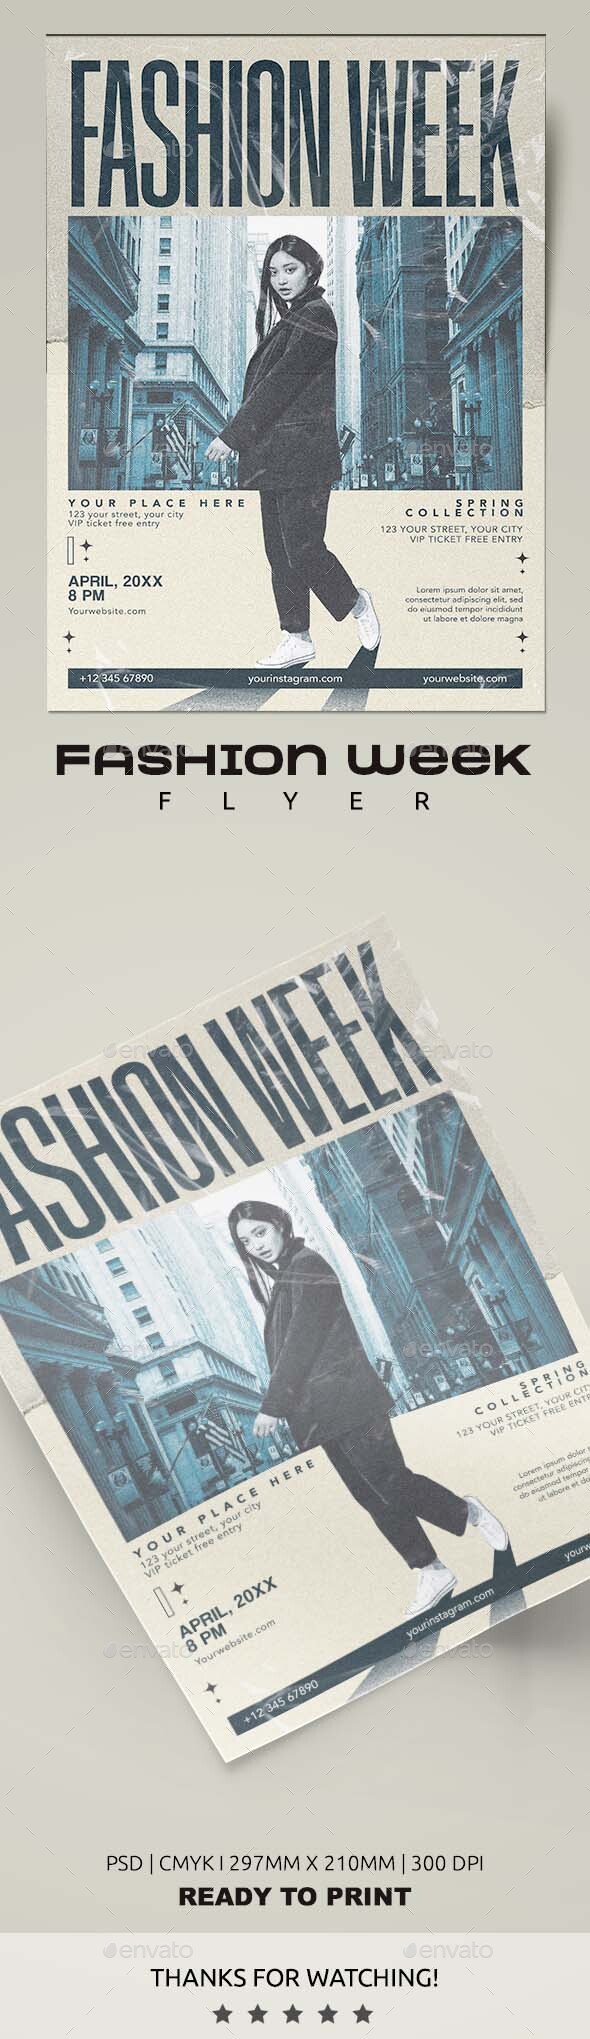 Fashion Week Show Flyer